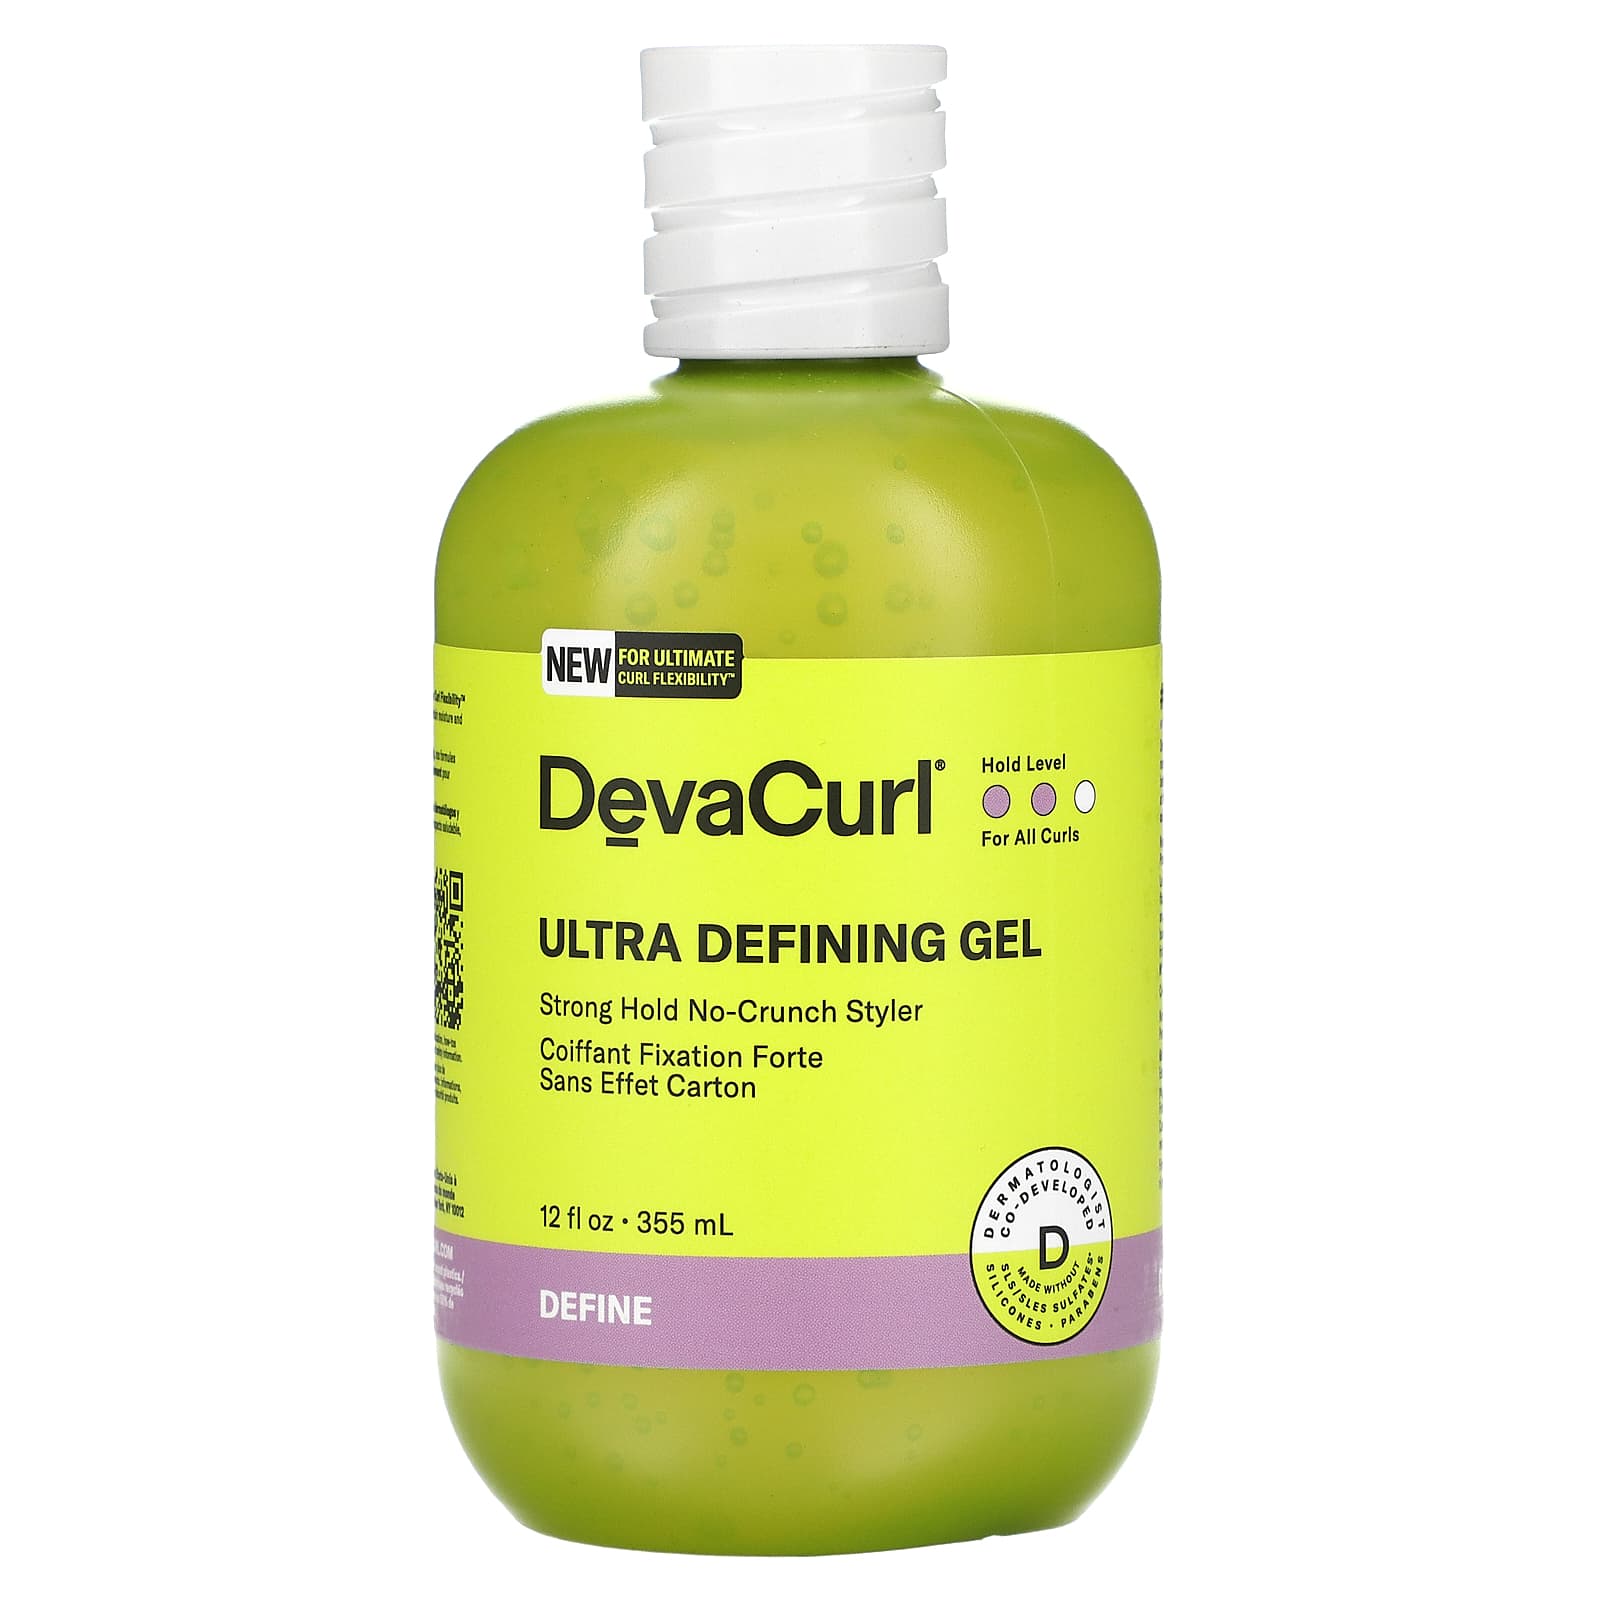 Средство DevaCurl для укладки волос сильной фиксации, 355 мл devacurl ultra defining gel средство для укладки волос сильной фиксации 355 мл 12 жидк унций